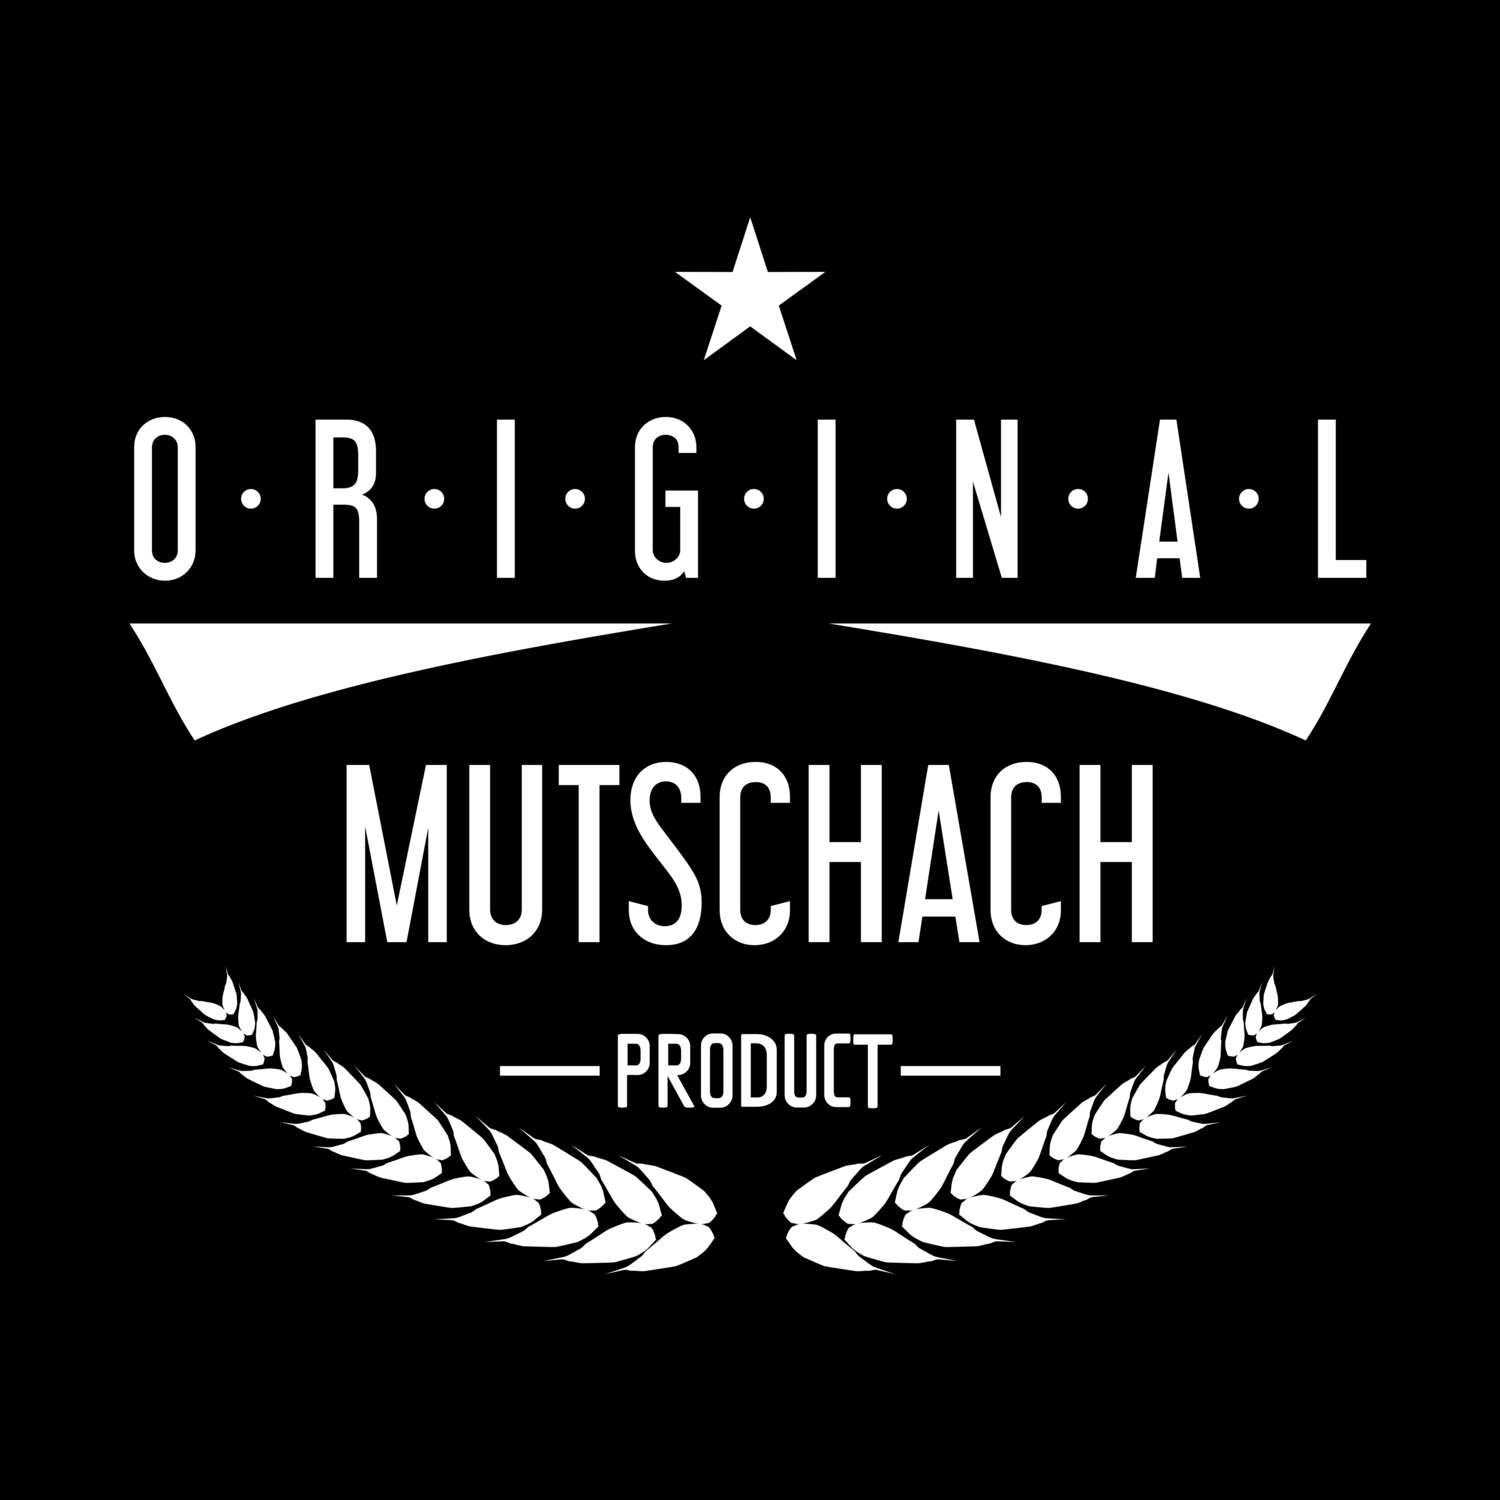 Mutschach T-Shirt »Original Product«